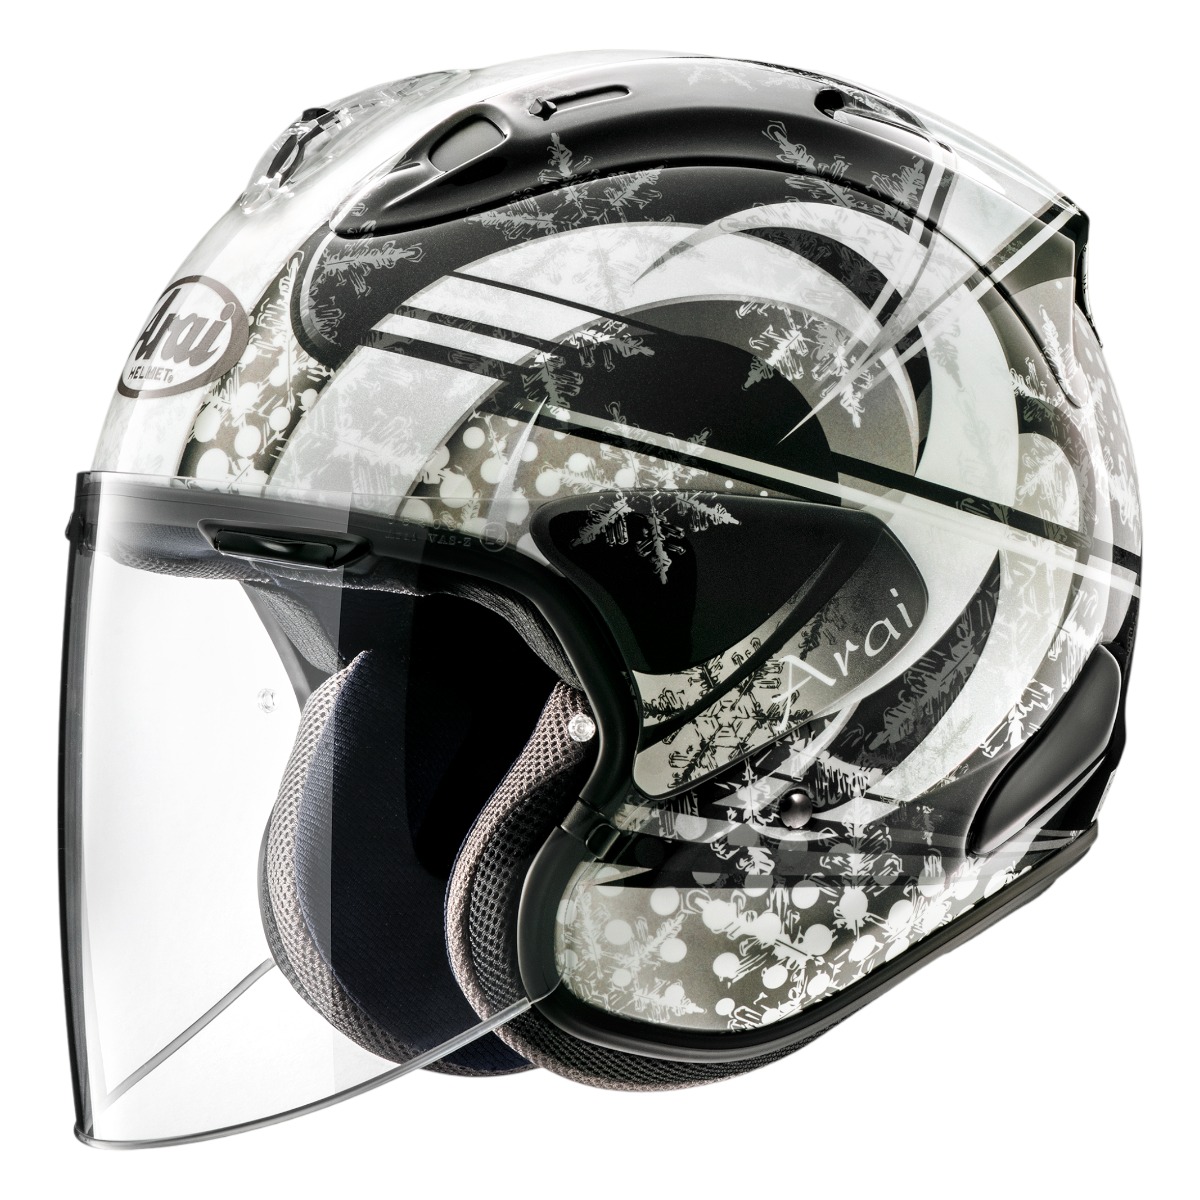 アライ オープンフェイスヘルメット SZ-G ホワイト サイズM 57-58cmJクルーズ